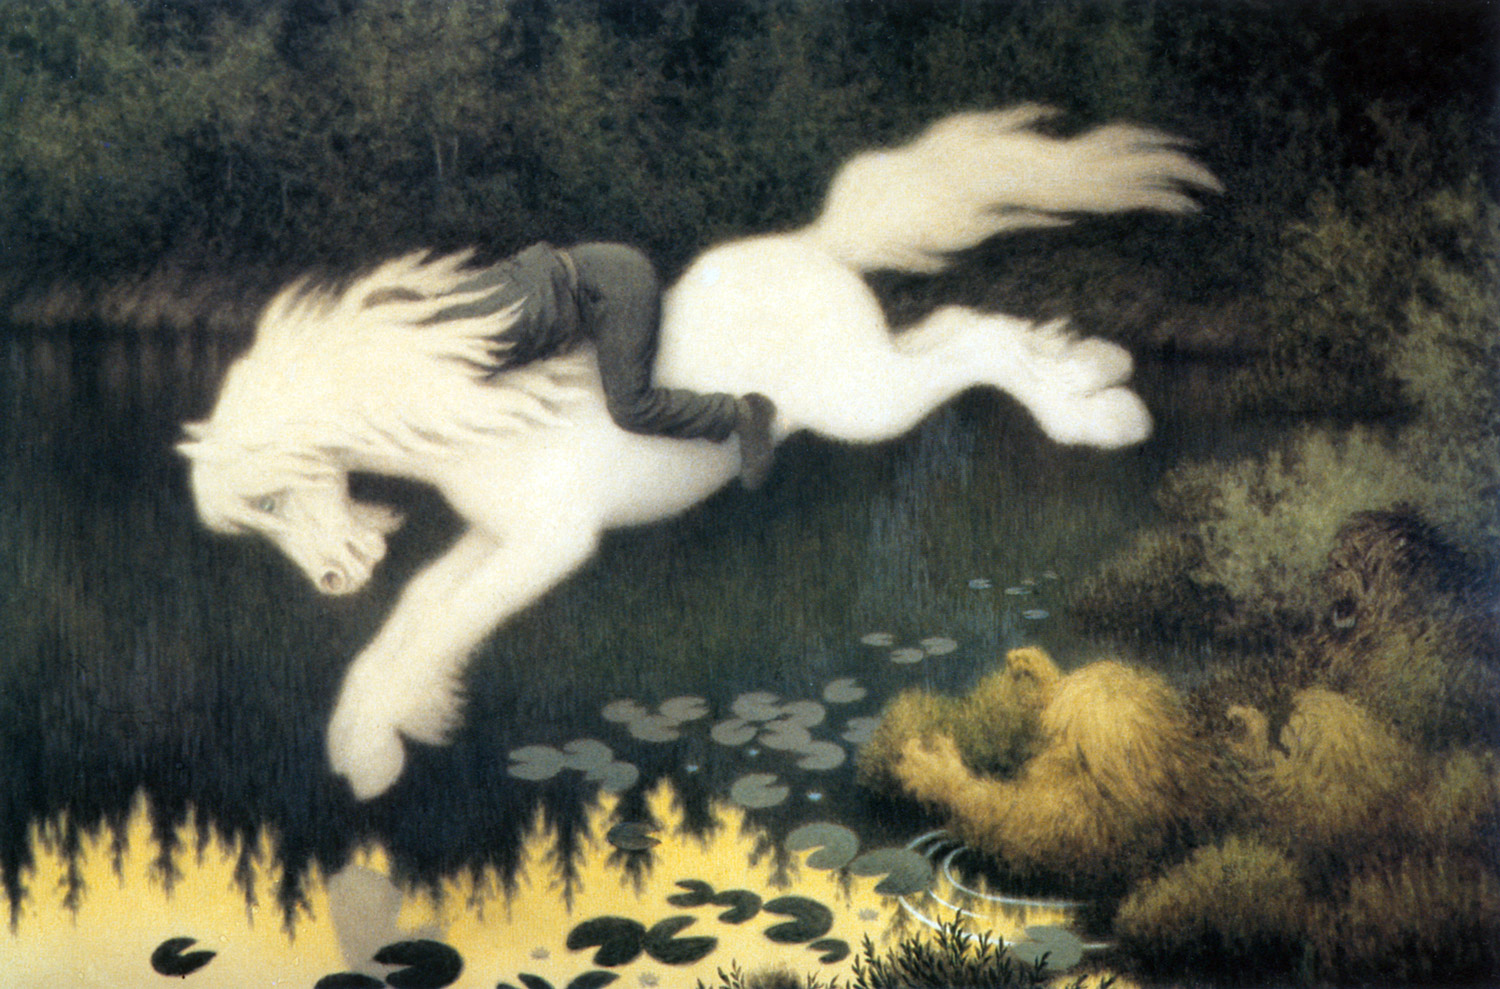 En vit häst dyker i vattnet med en person på ryggen.